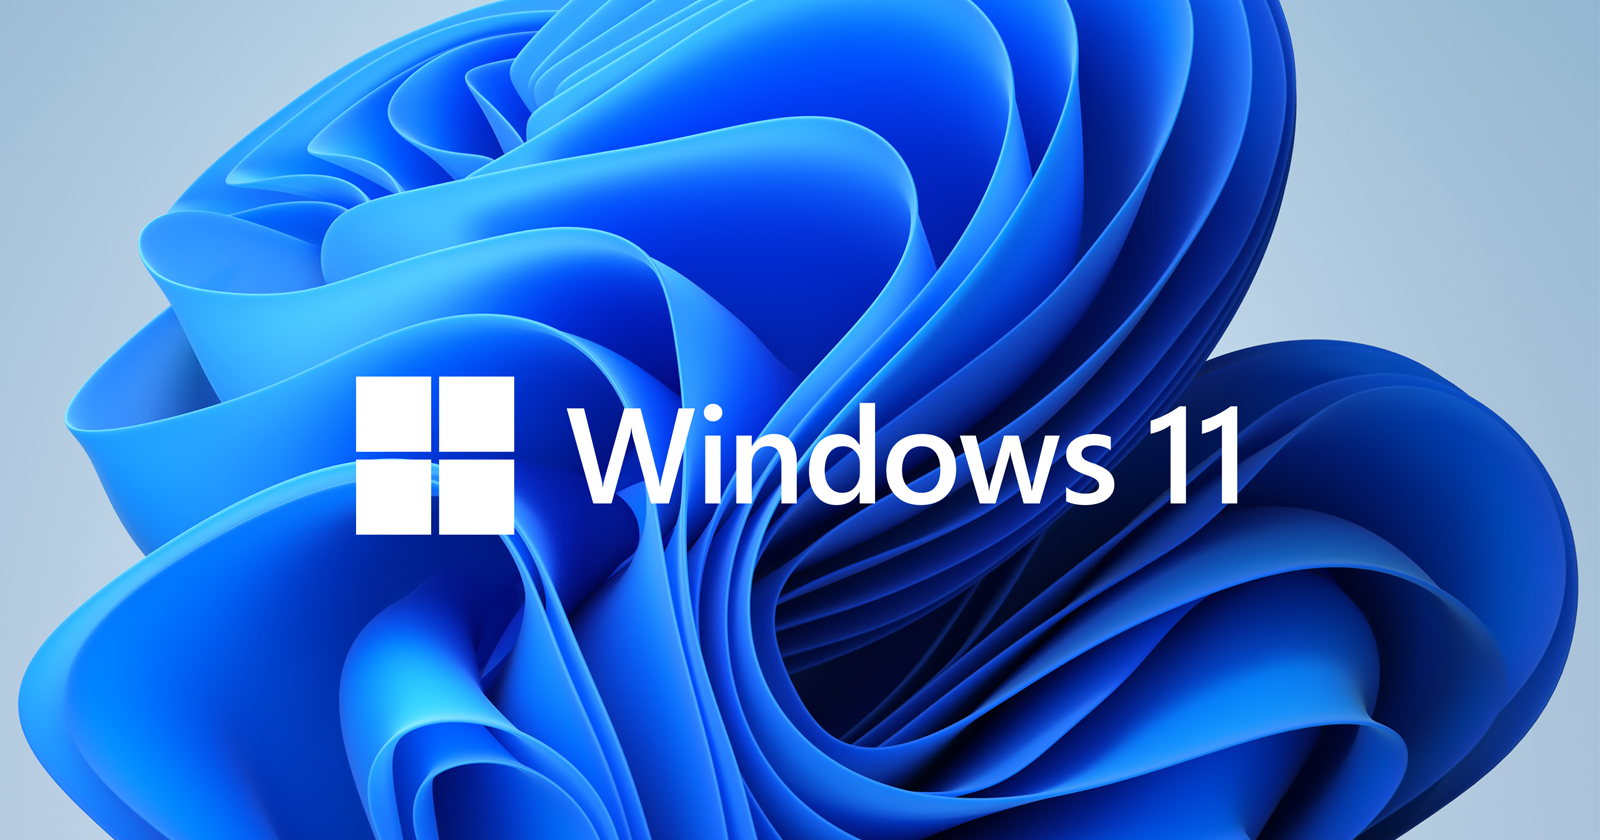 windows-11-boyutu-100-megabayt-dusuruldu-1